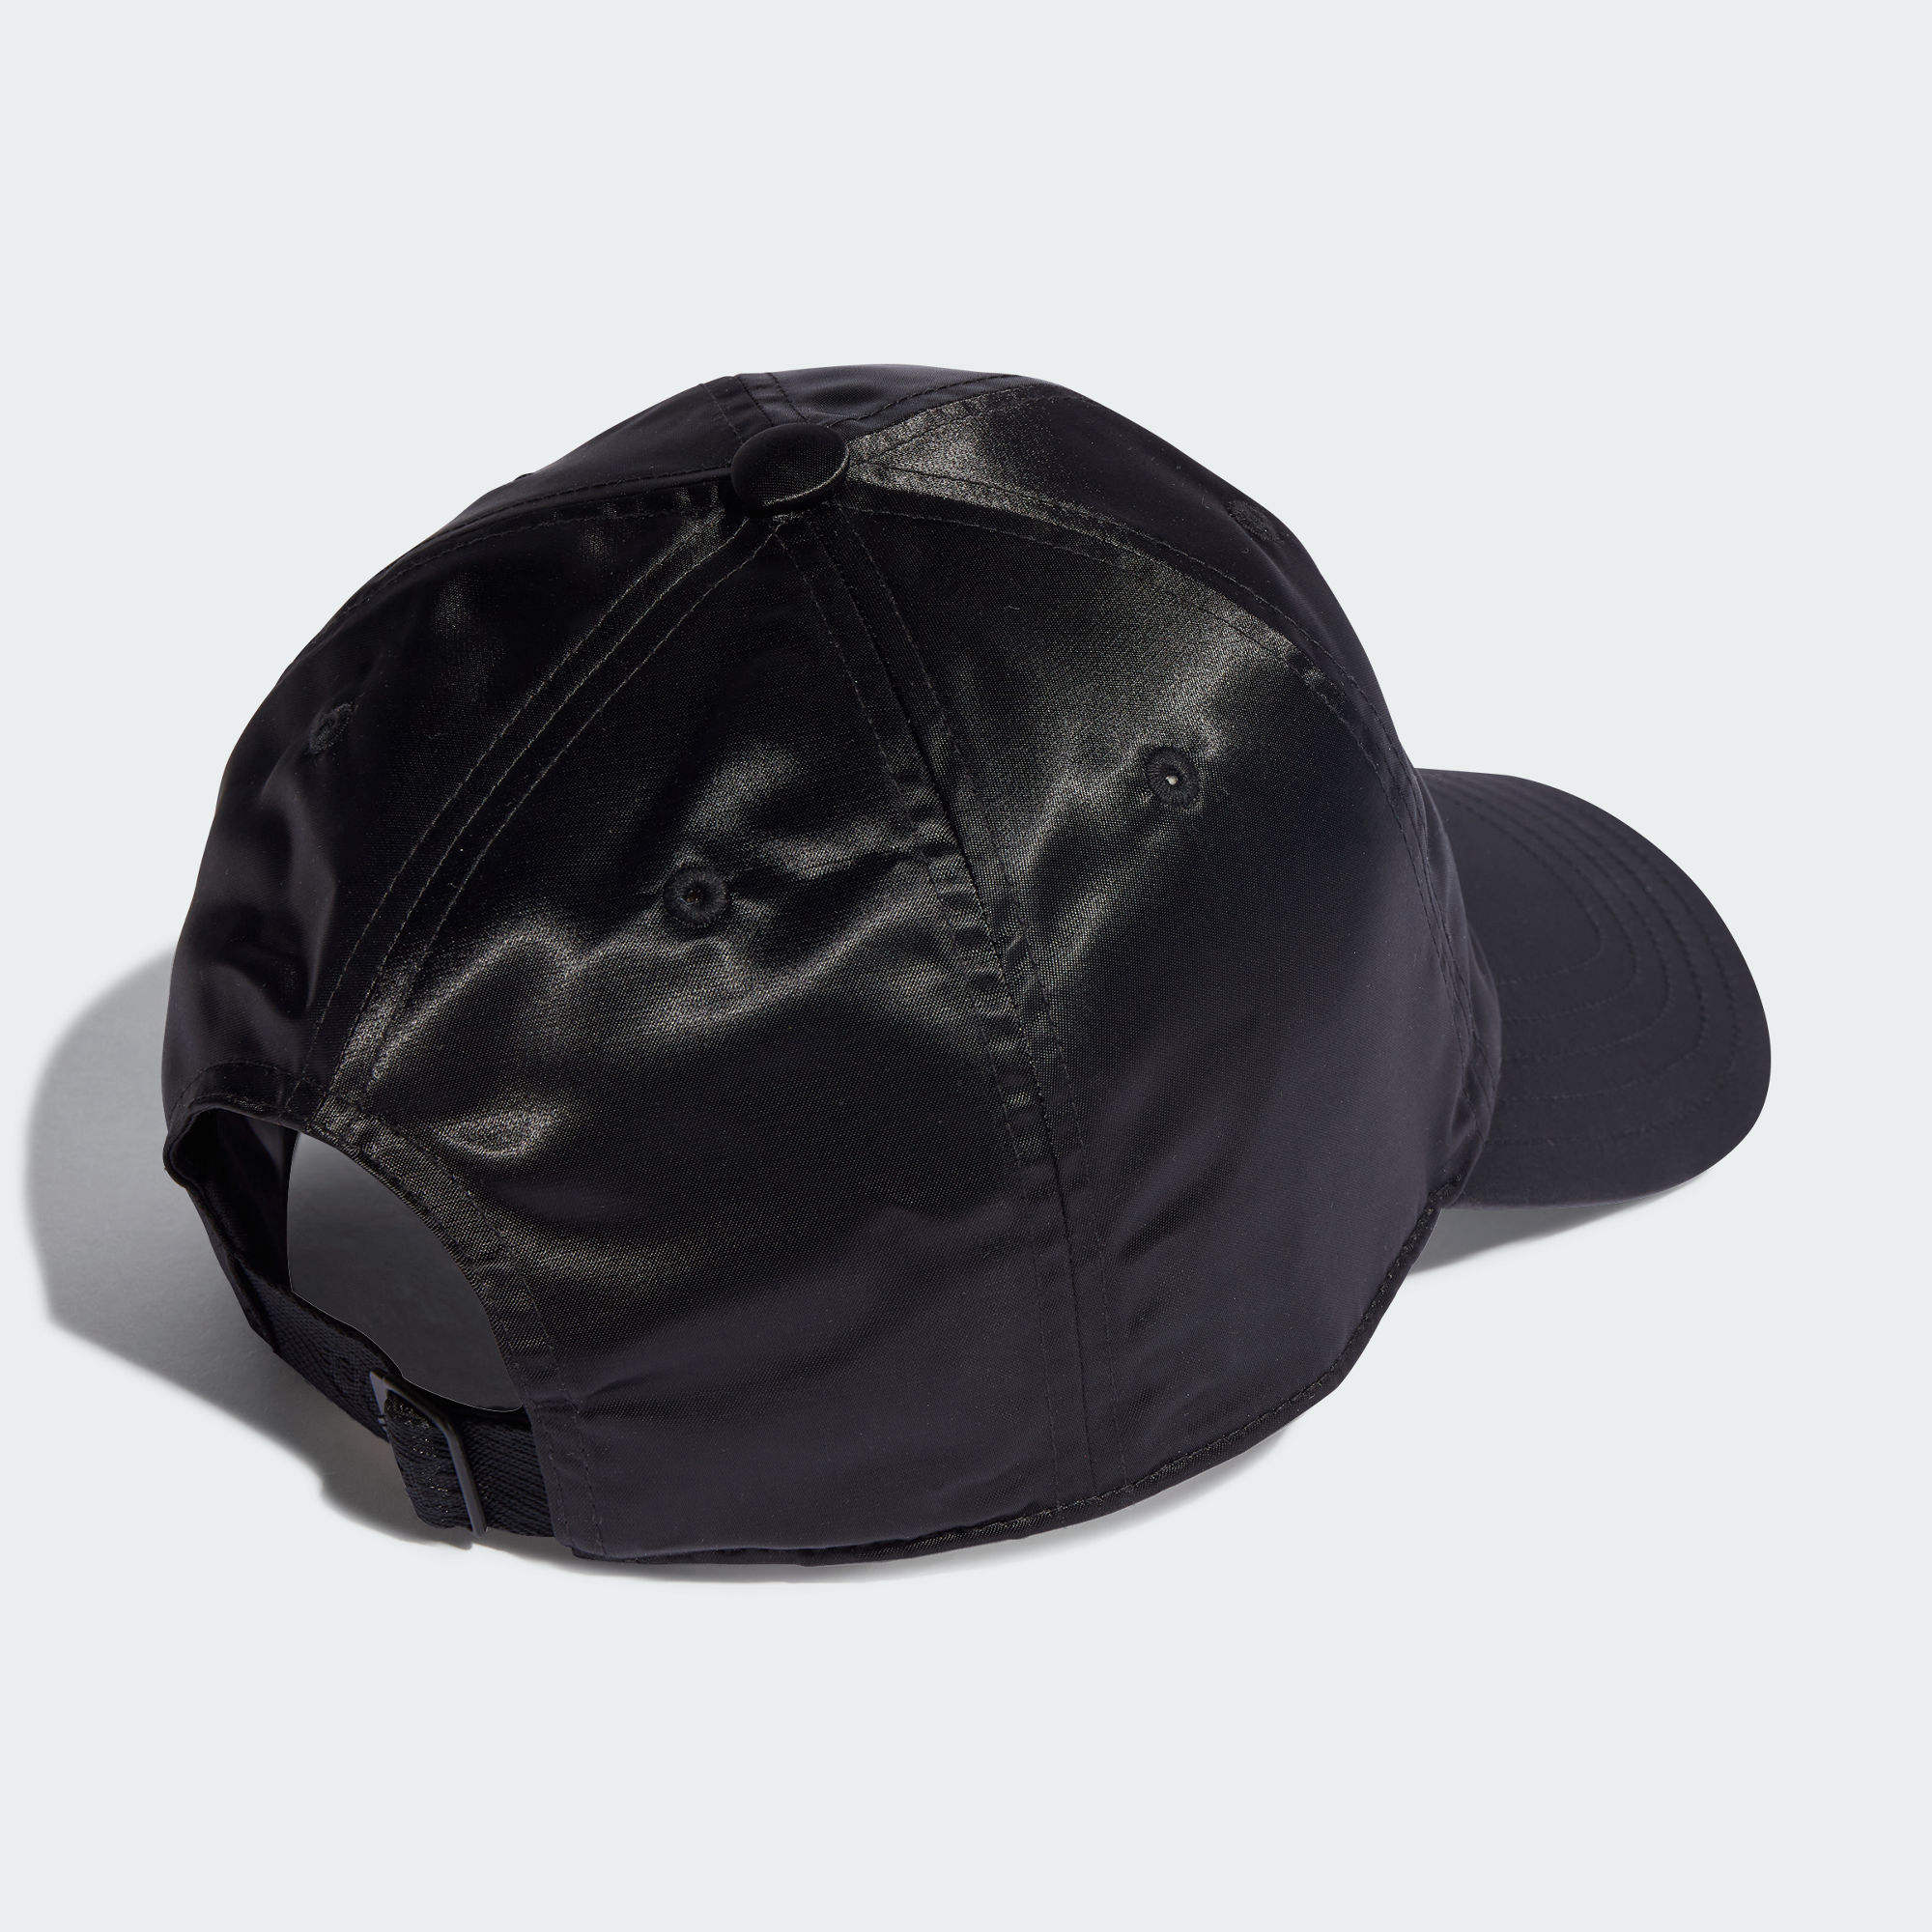 緞質棒球帽- 黑色| 女子,男子| adidas(愛迪達)香港官方網上商店